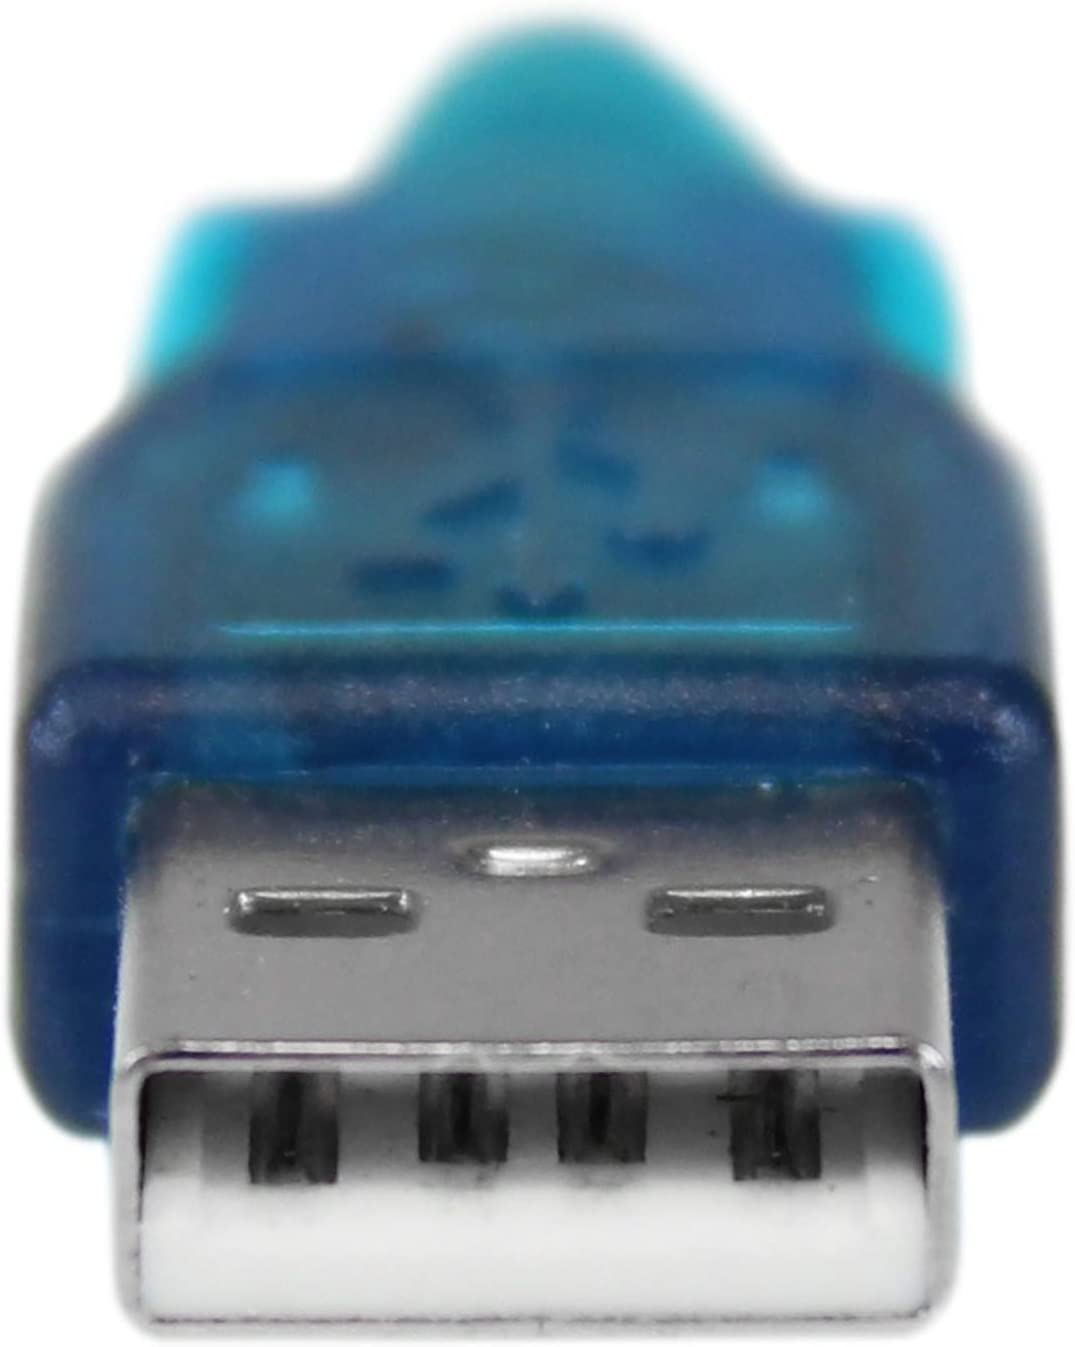 Adaptateur USB vers port Serie RS-232 mâle/mâle, informatique ile de la réunion 974